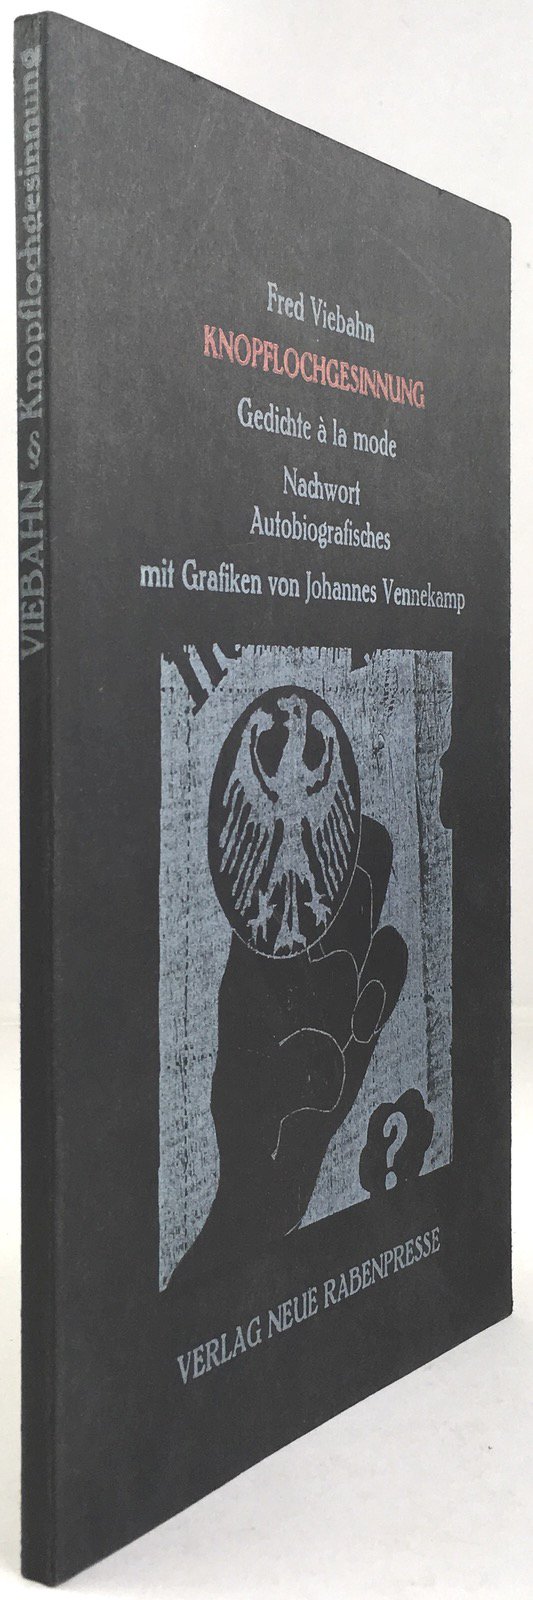 Abbildung von "Knopflochgesinnung. 12 Gedichte à la mode. 1 Nachwort. Autobiographisches mit Grafiken von Johannes Vennekamp..."